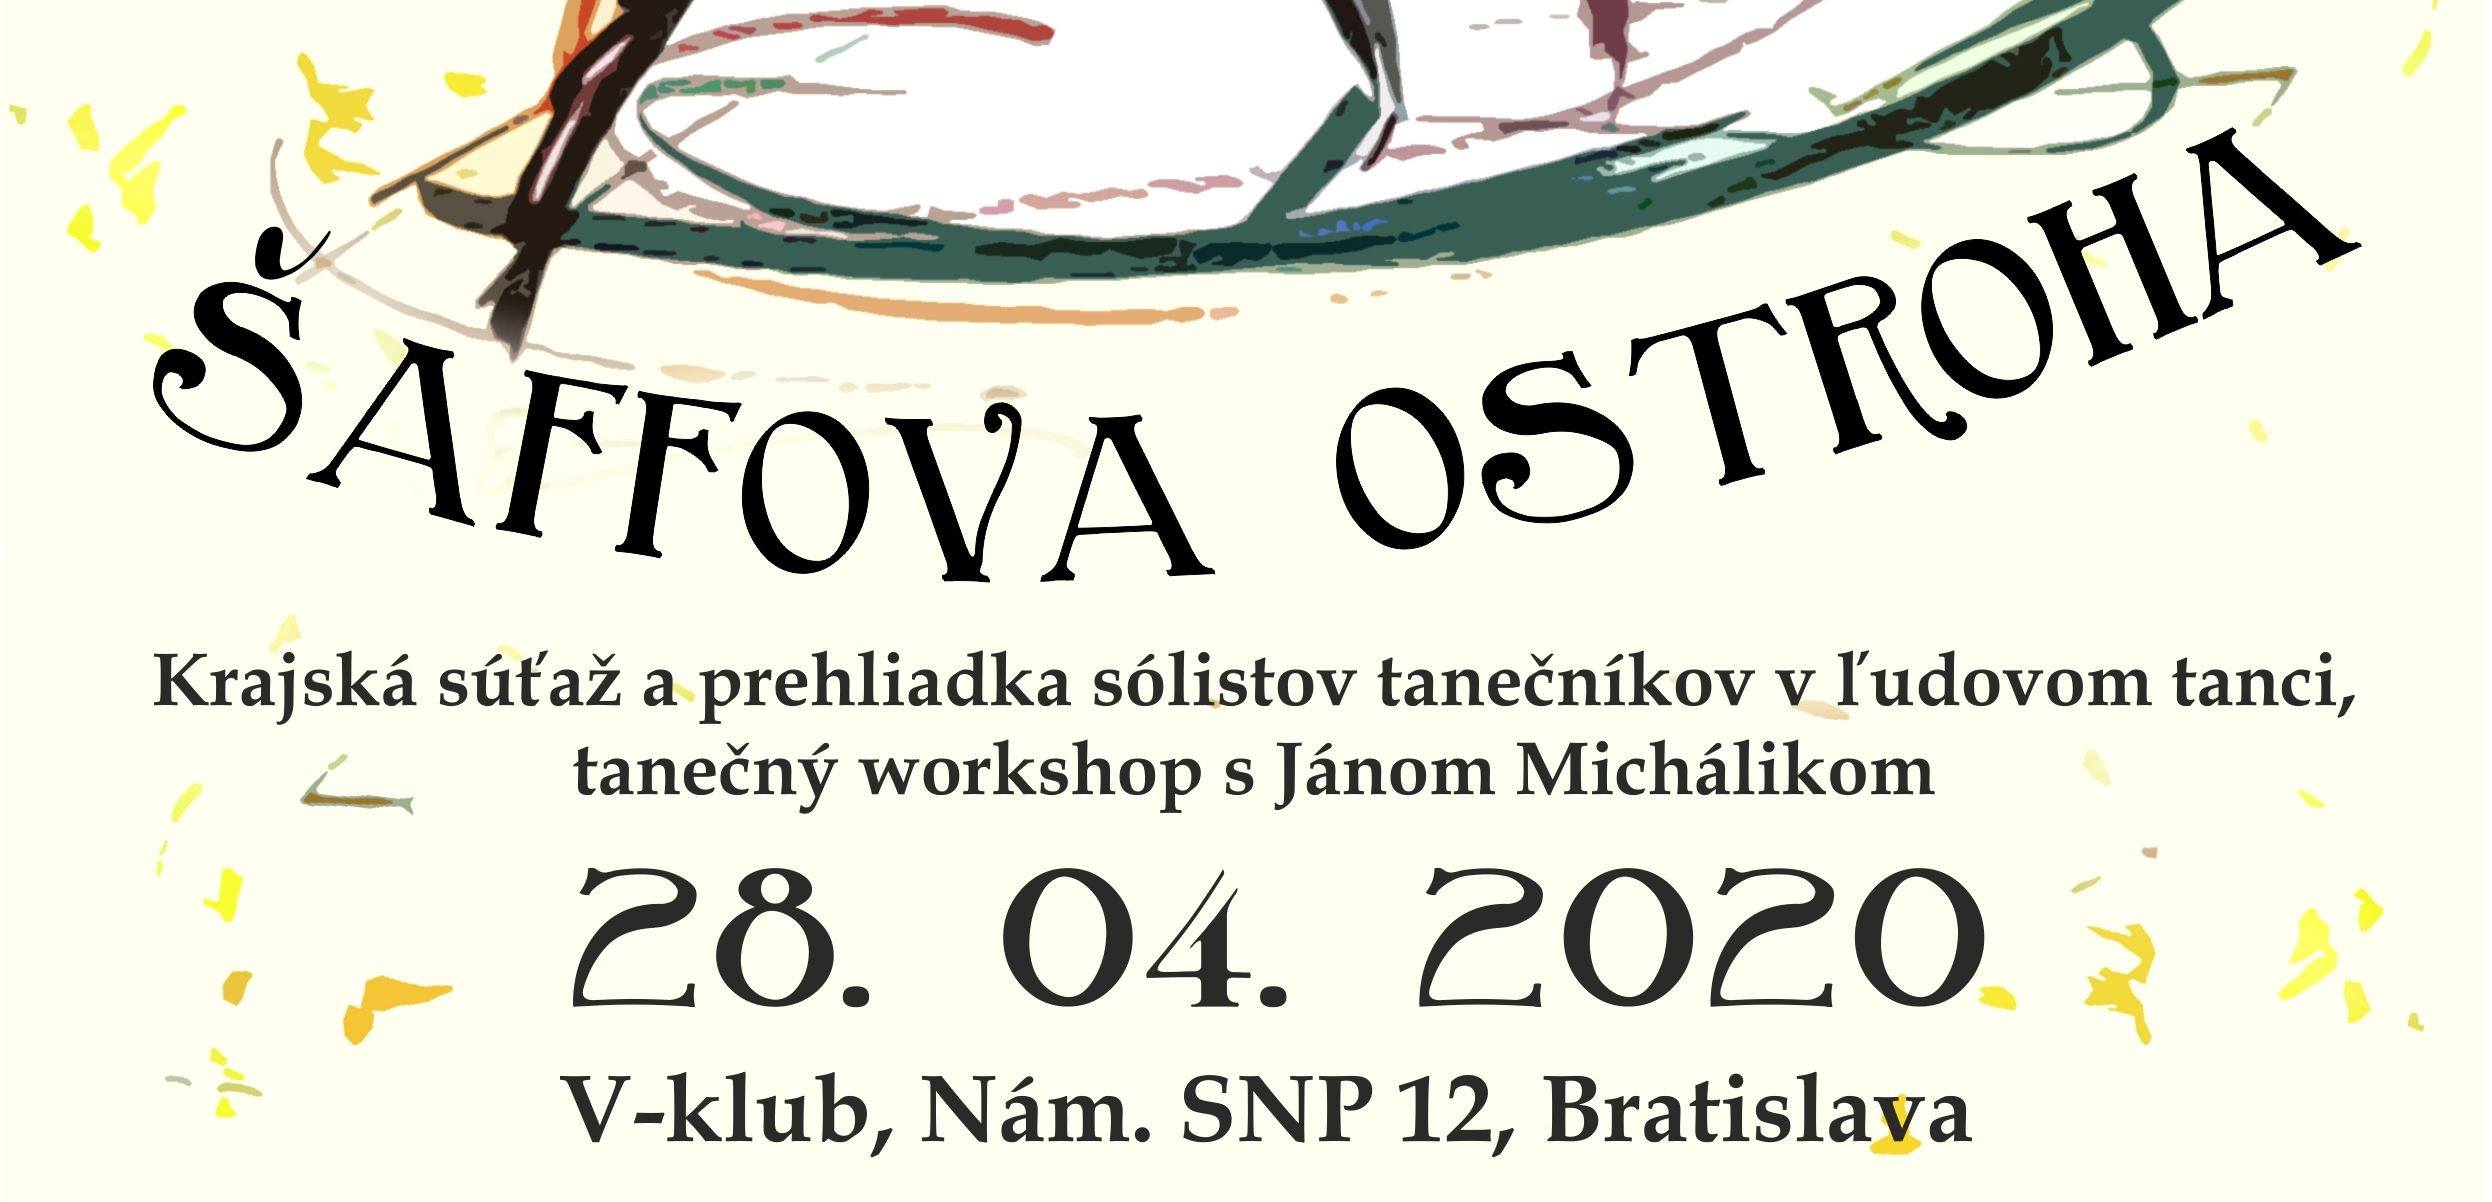 taffova ostroha 2020 Bratislava - 28. ronk